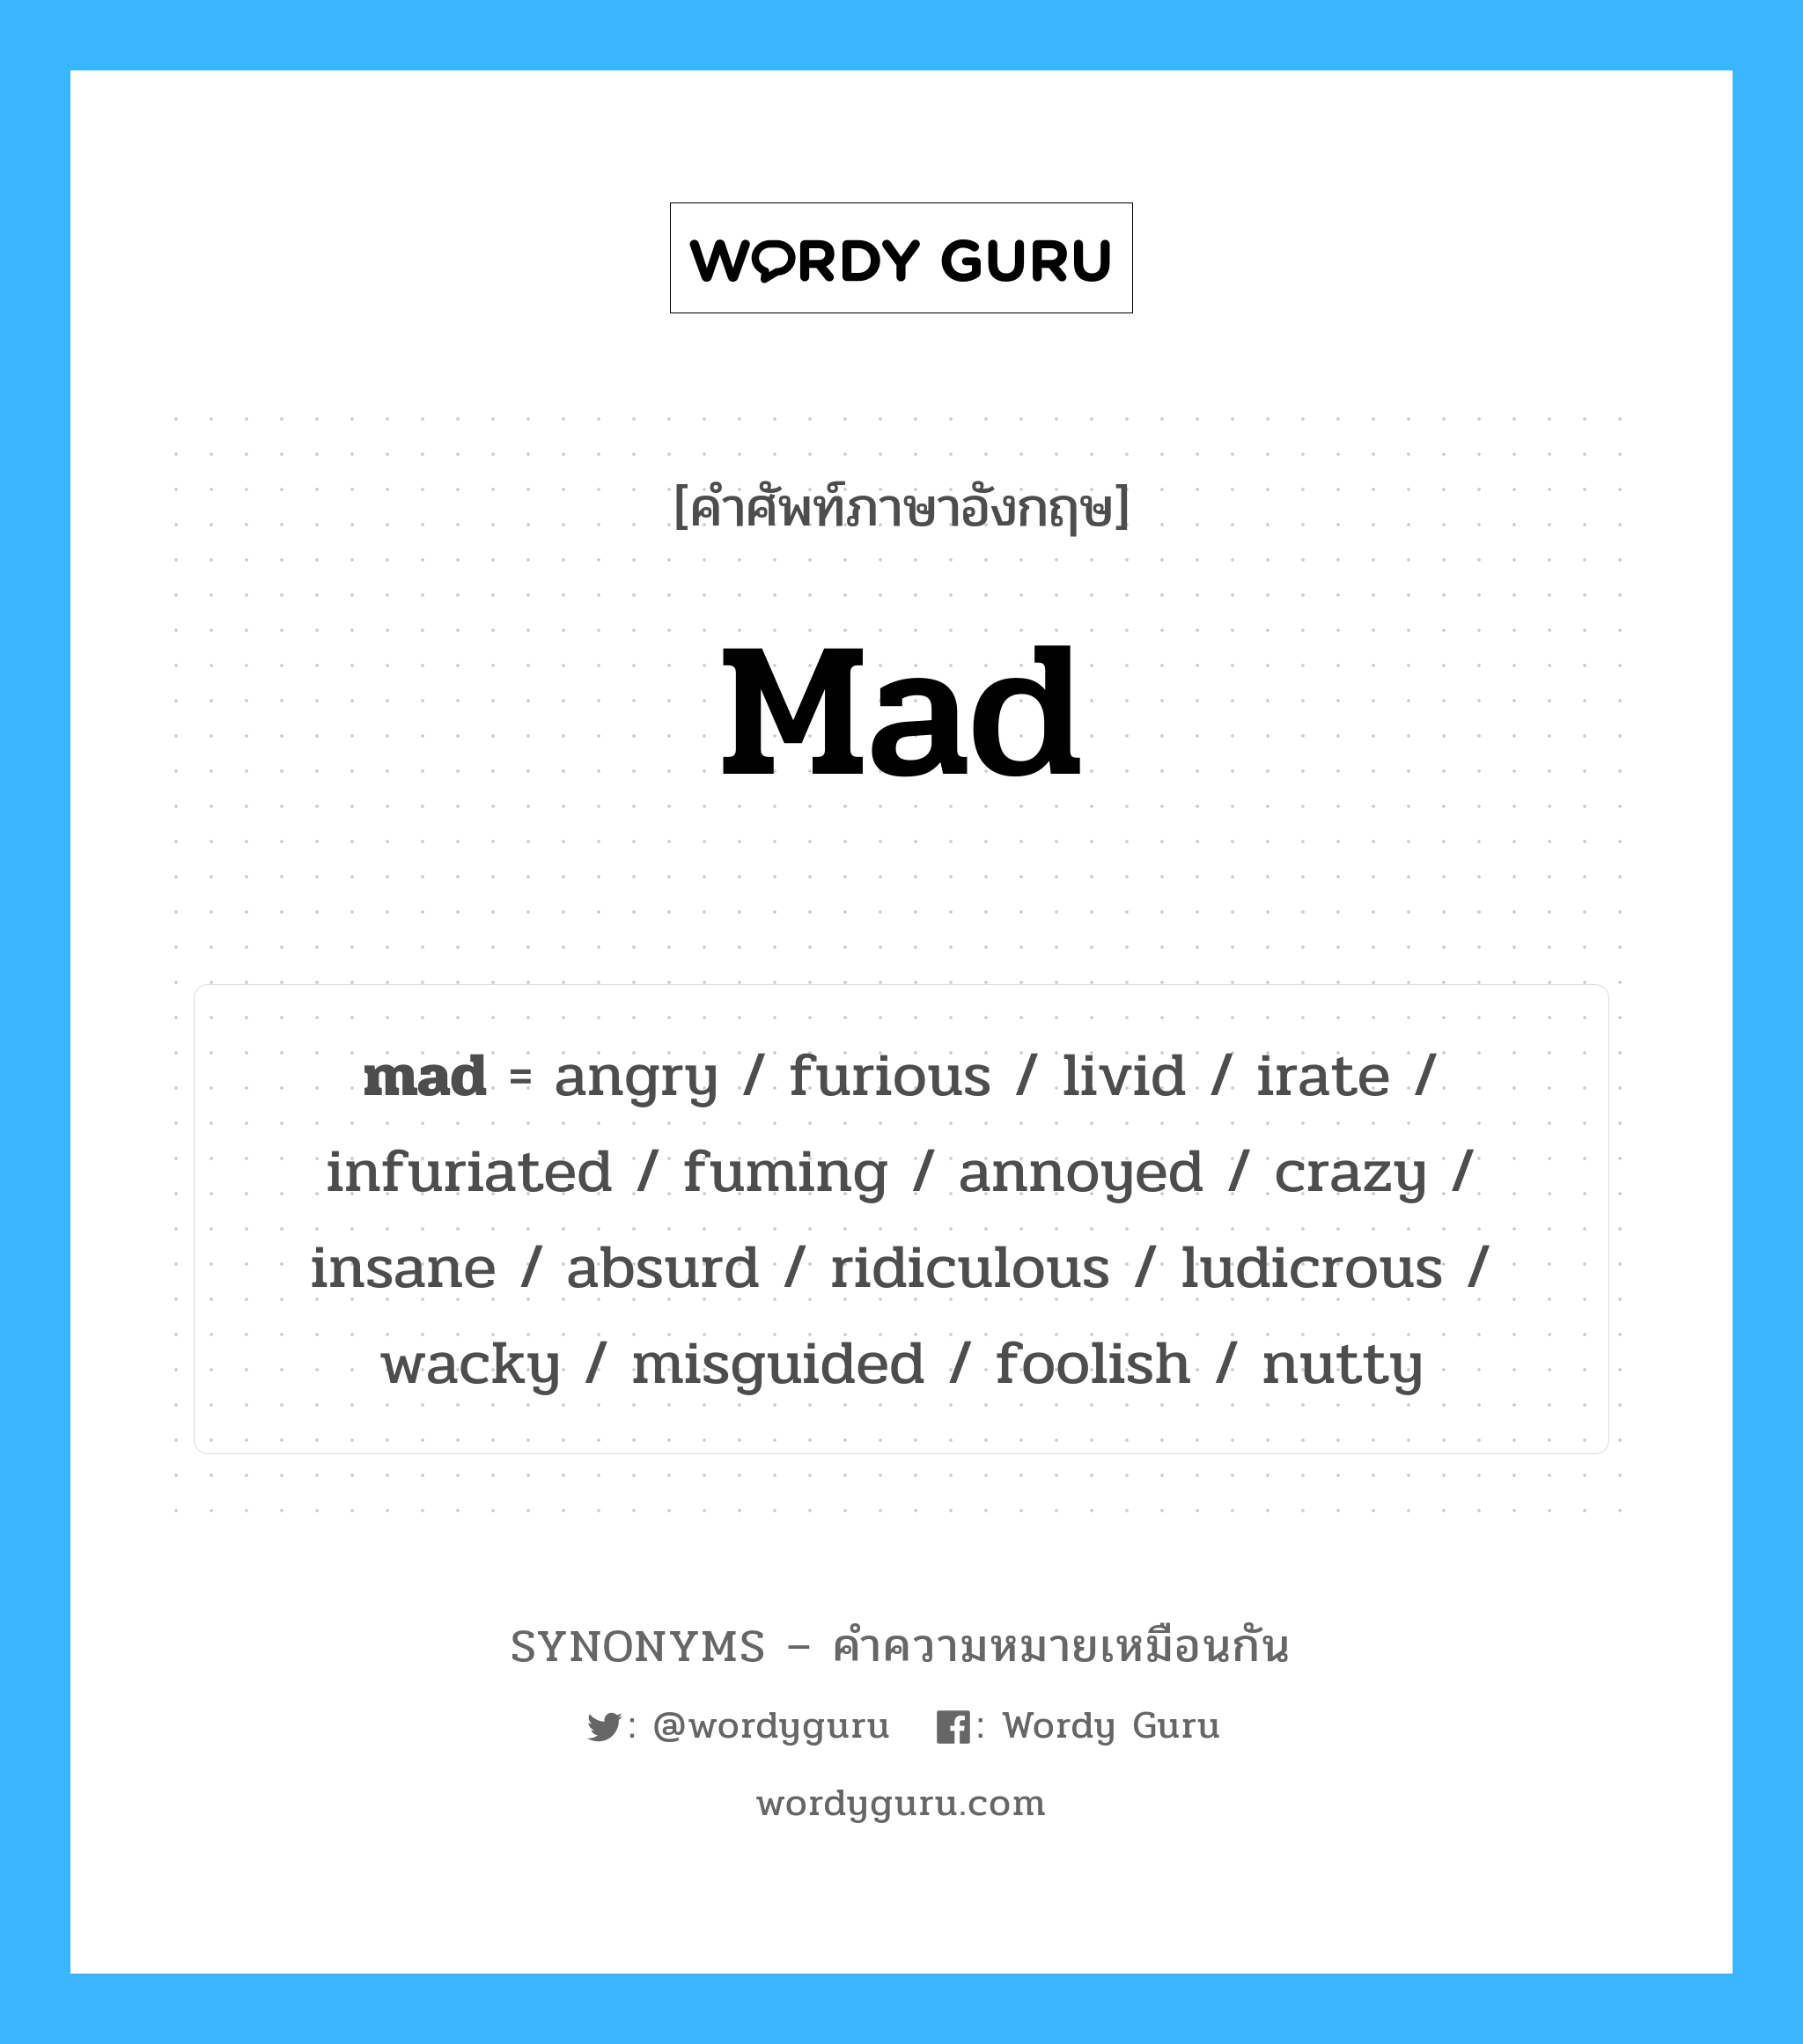 annoyed เป็นหนึ่งใน mad และมีคำอื่น ๆ อีกดังนี้, คำศัพท์ภาษาอังกฤษ annoyed ความหมายคล้ายกันกับ mad แปลว่า รำคาญ หมวด mad